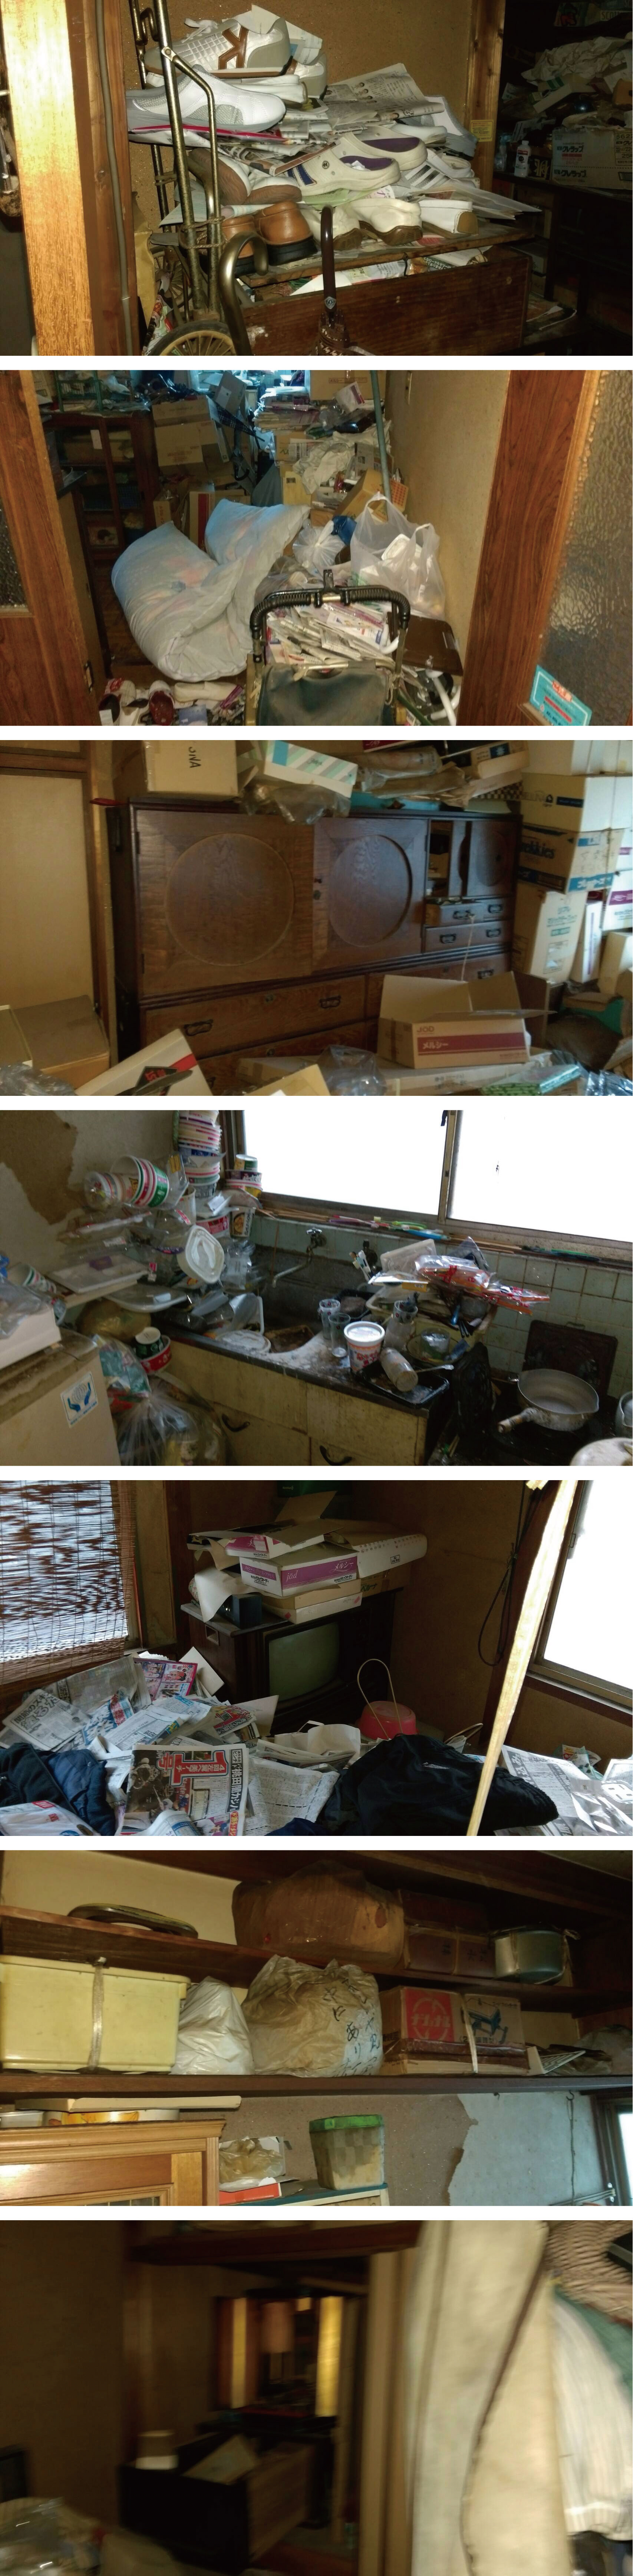 ゴミ屋敷の遺品整理を広島市佐伯区で行いました